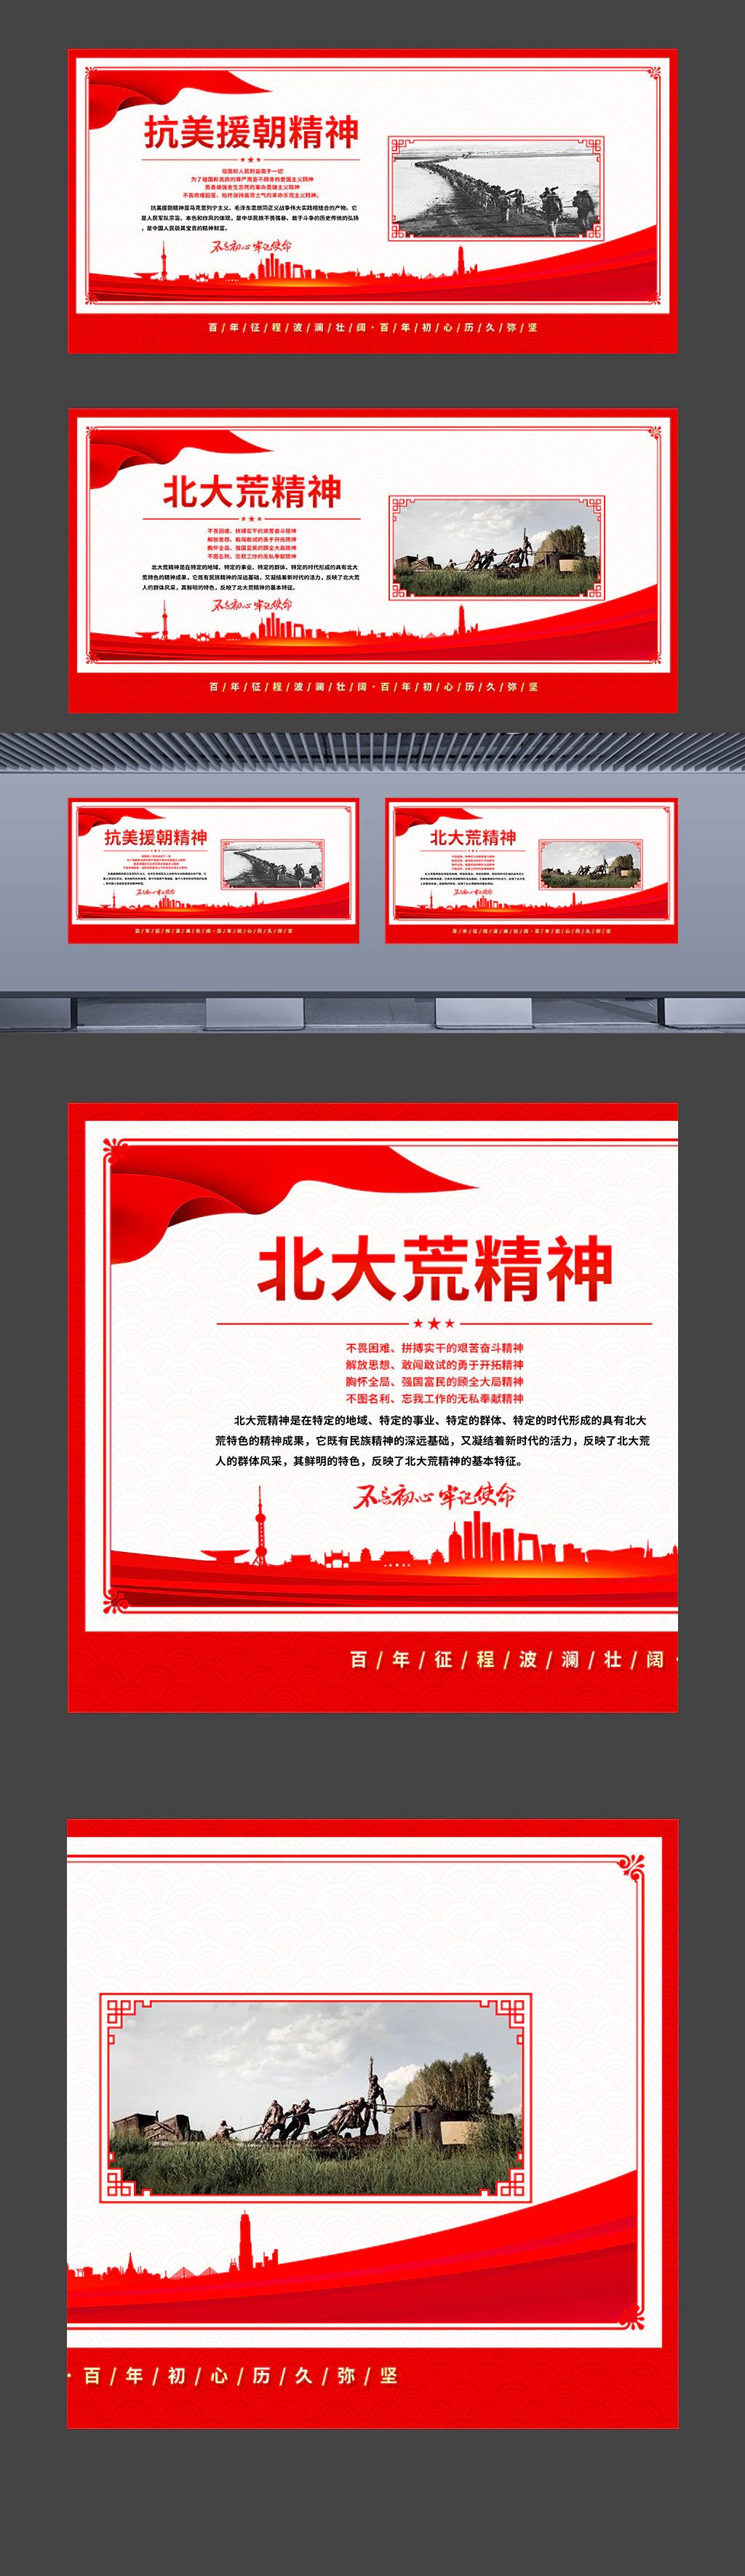 中国革命精神之抗美援朝精神北大荒精神挂图海报